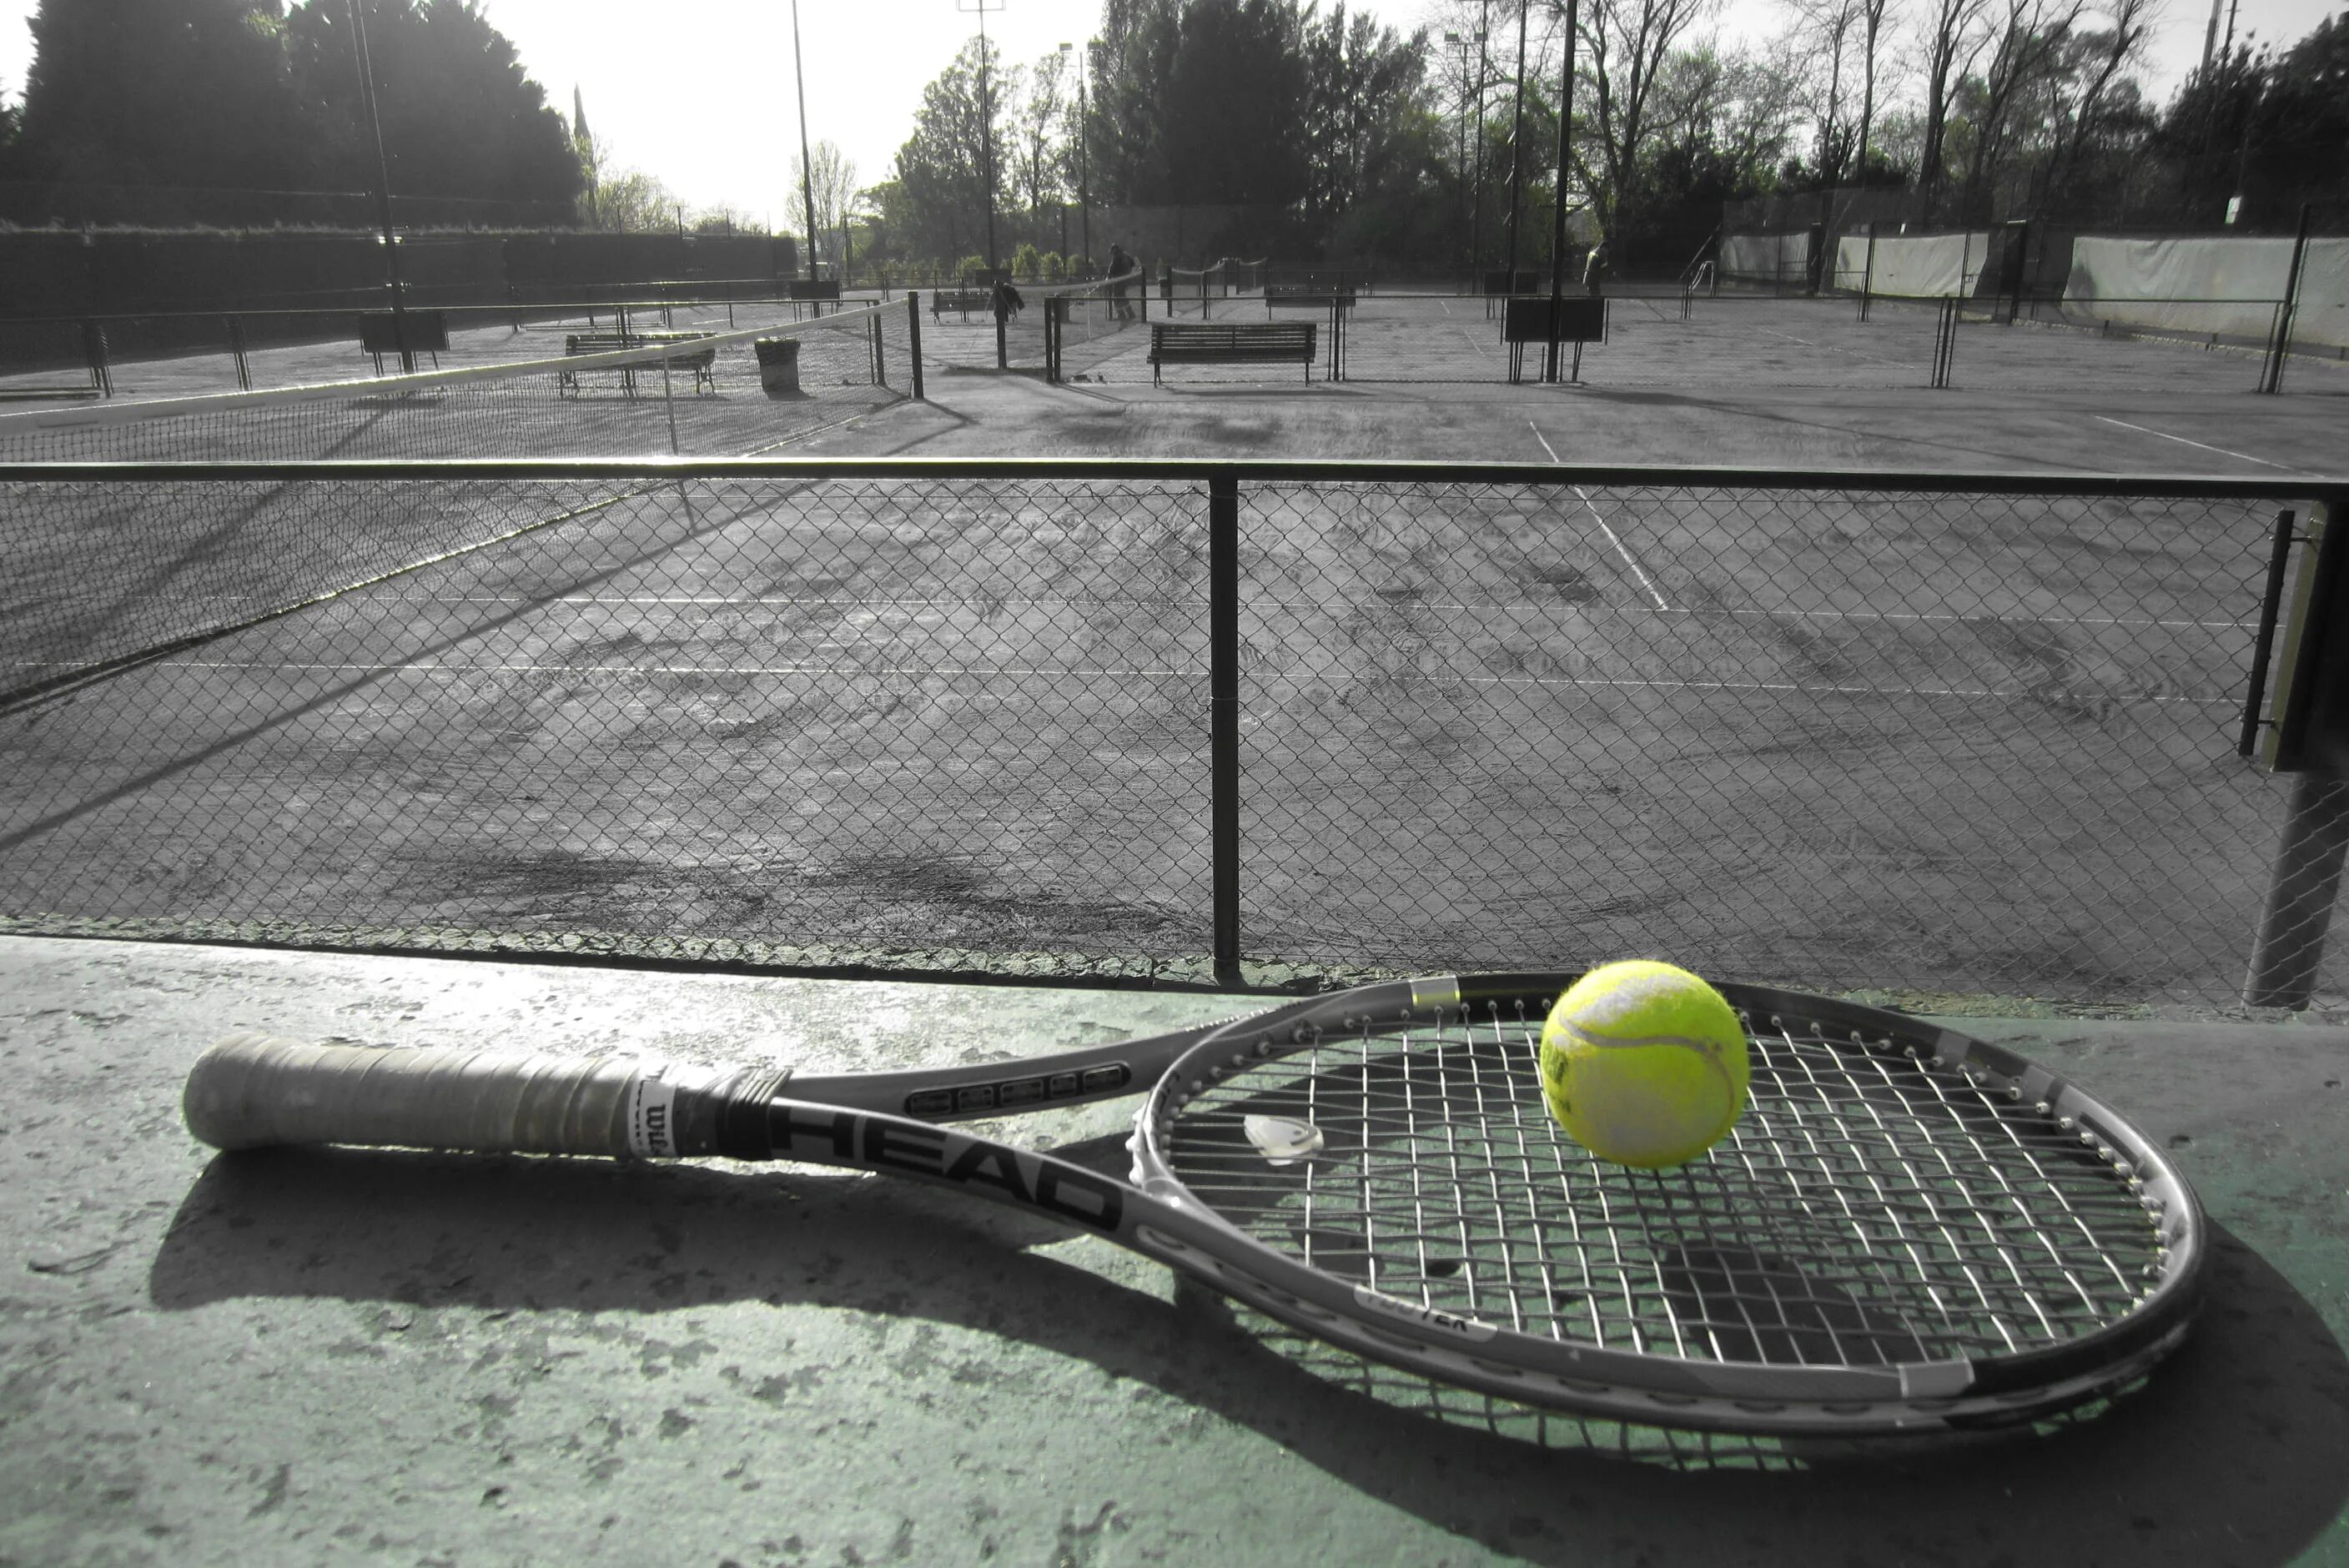 Теннис игра с ракетками. Теннис. Теннисный корт черный. Теннисный корт с мячом и ракеткой. Теннисный мяч на корте.